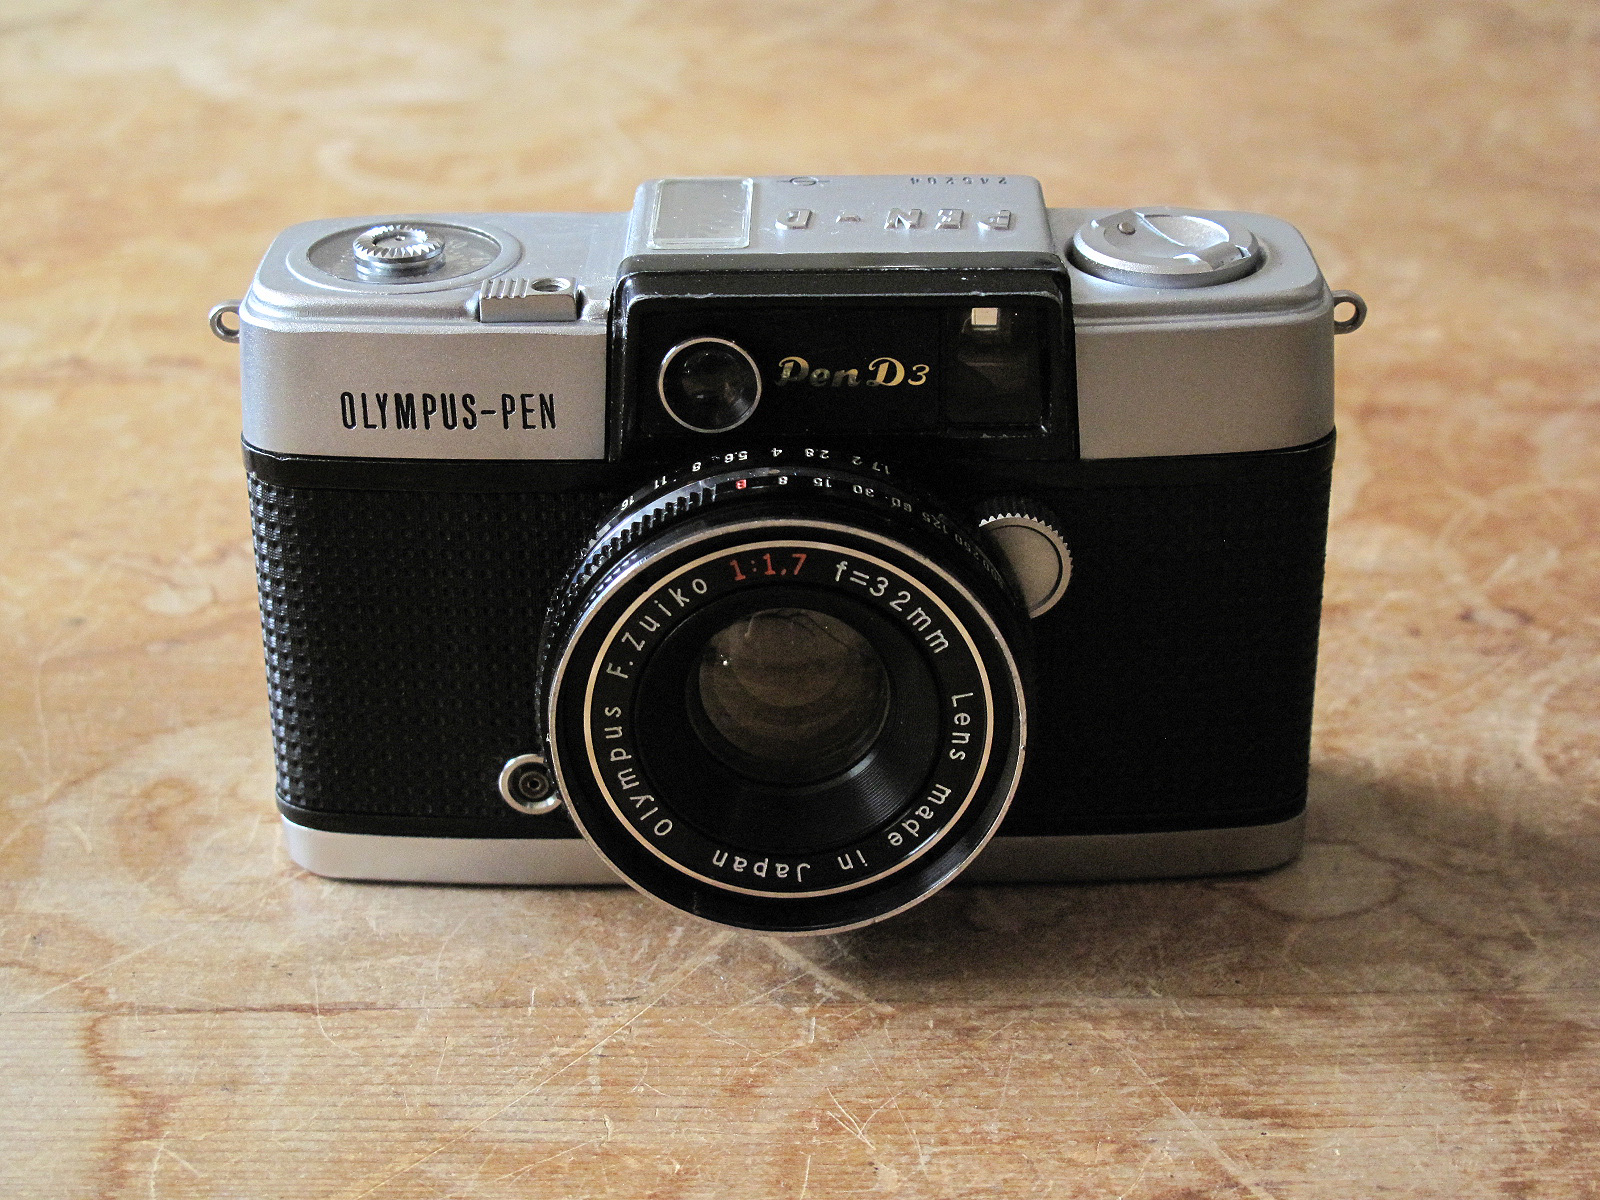 OLYMPUS PEN D3 | イエネコカメラ 名古屋市 中古フィルムカメラを修理販売